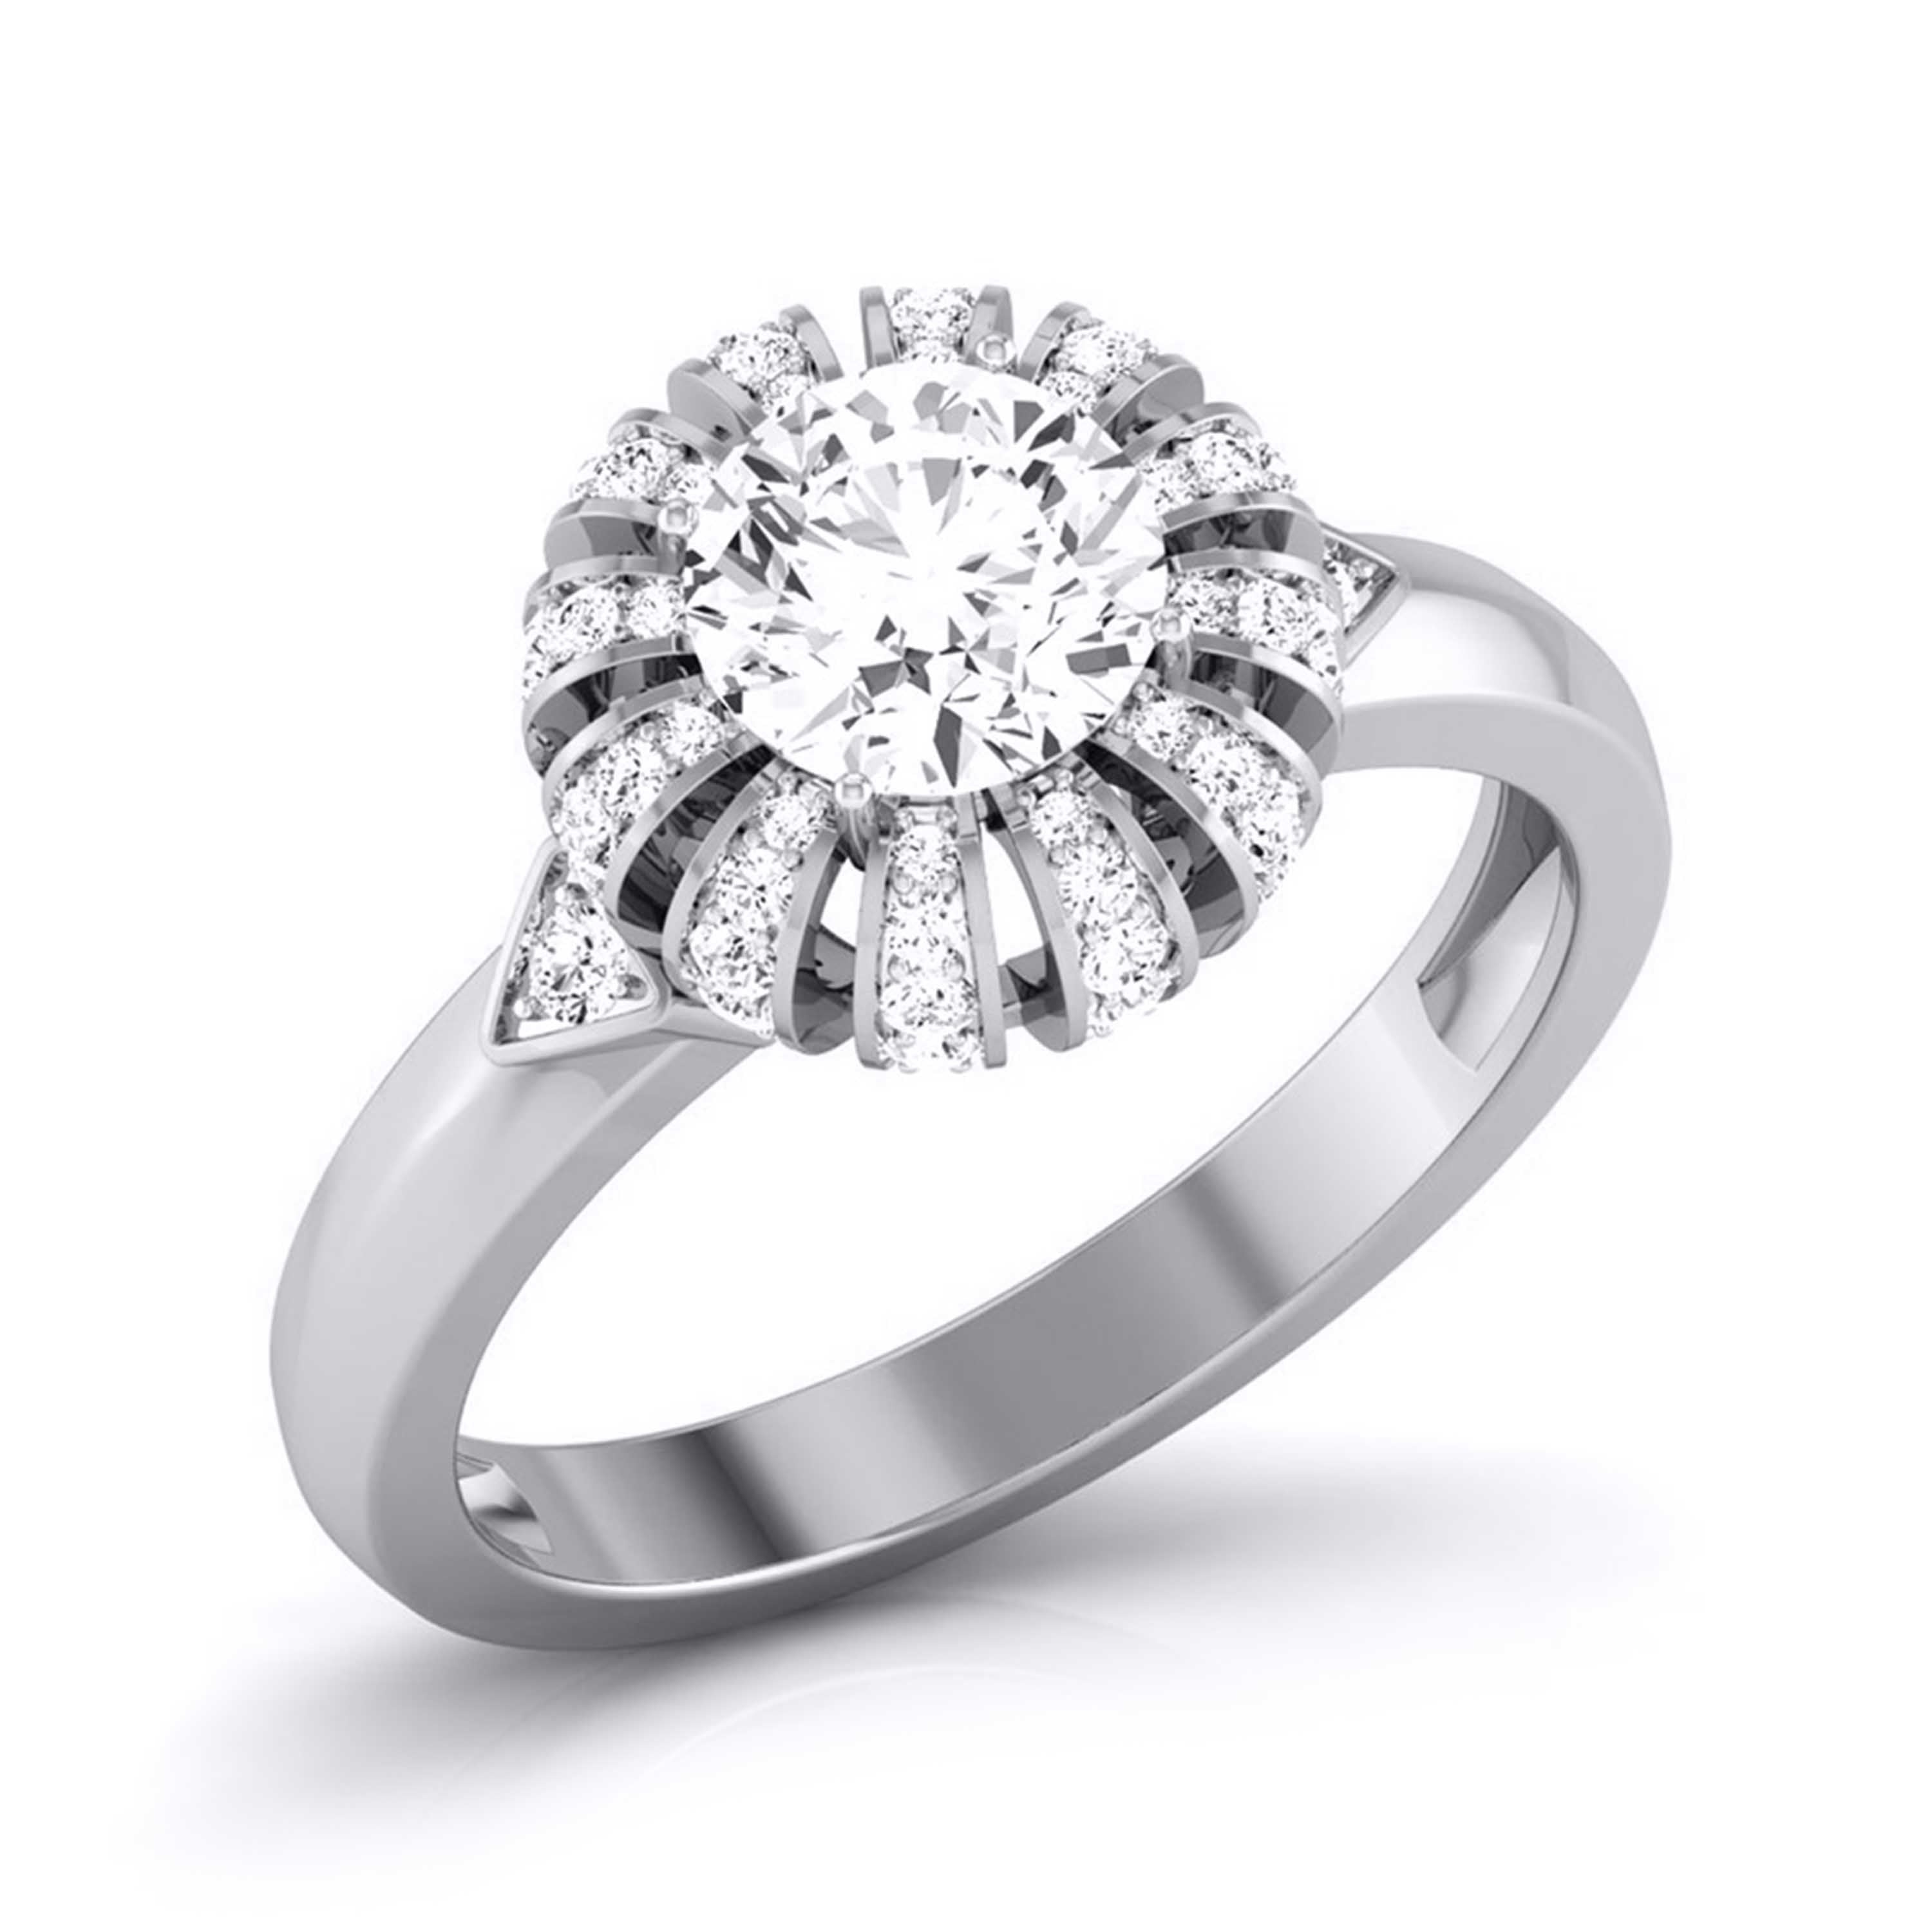 1-Carat Solitaire Designer Platinum Diamond Ring  for Women JL PT 8052-C   Jewelove